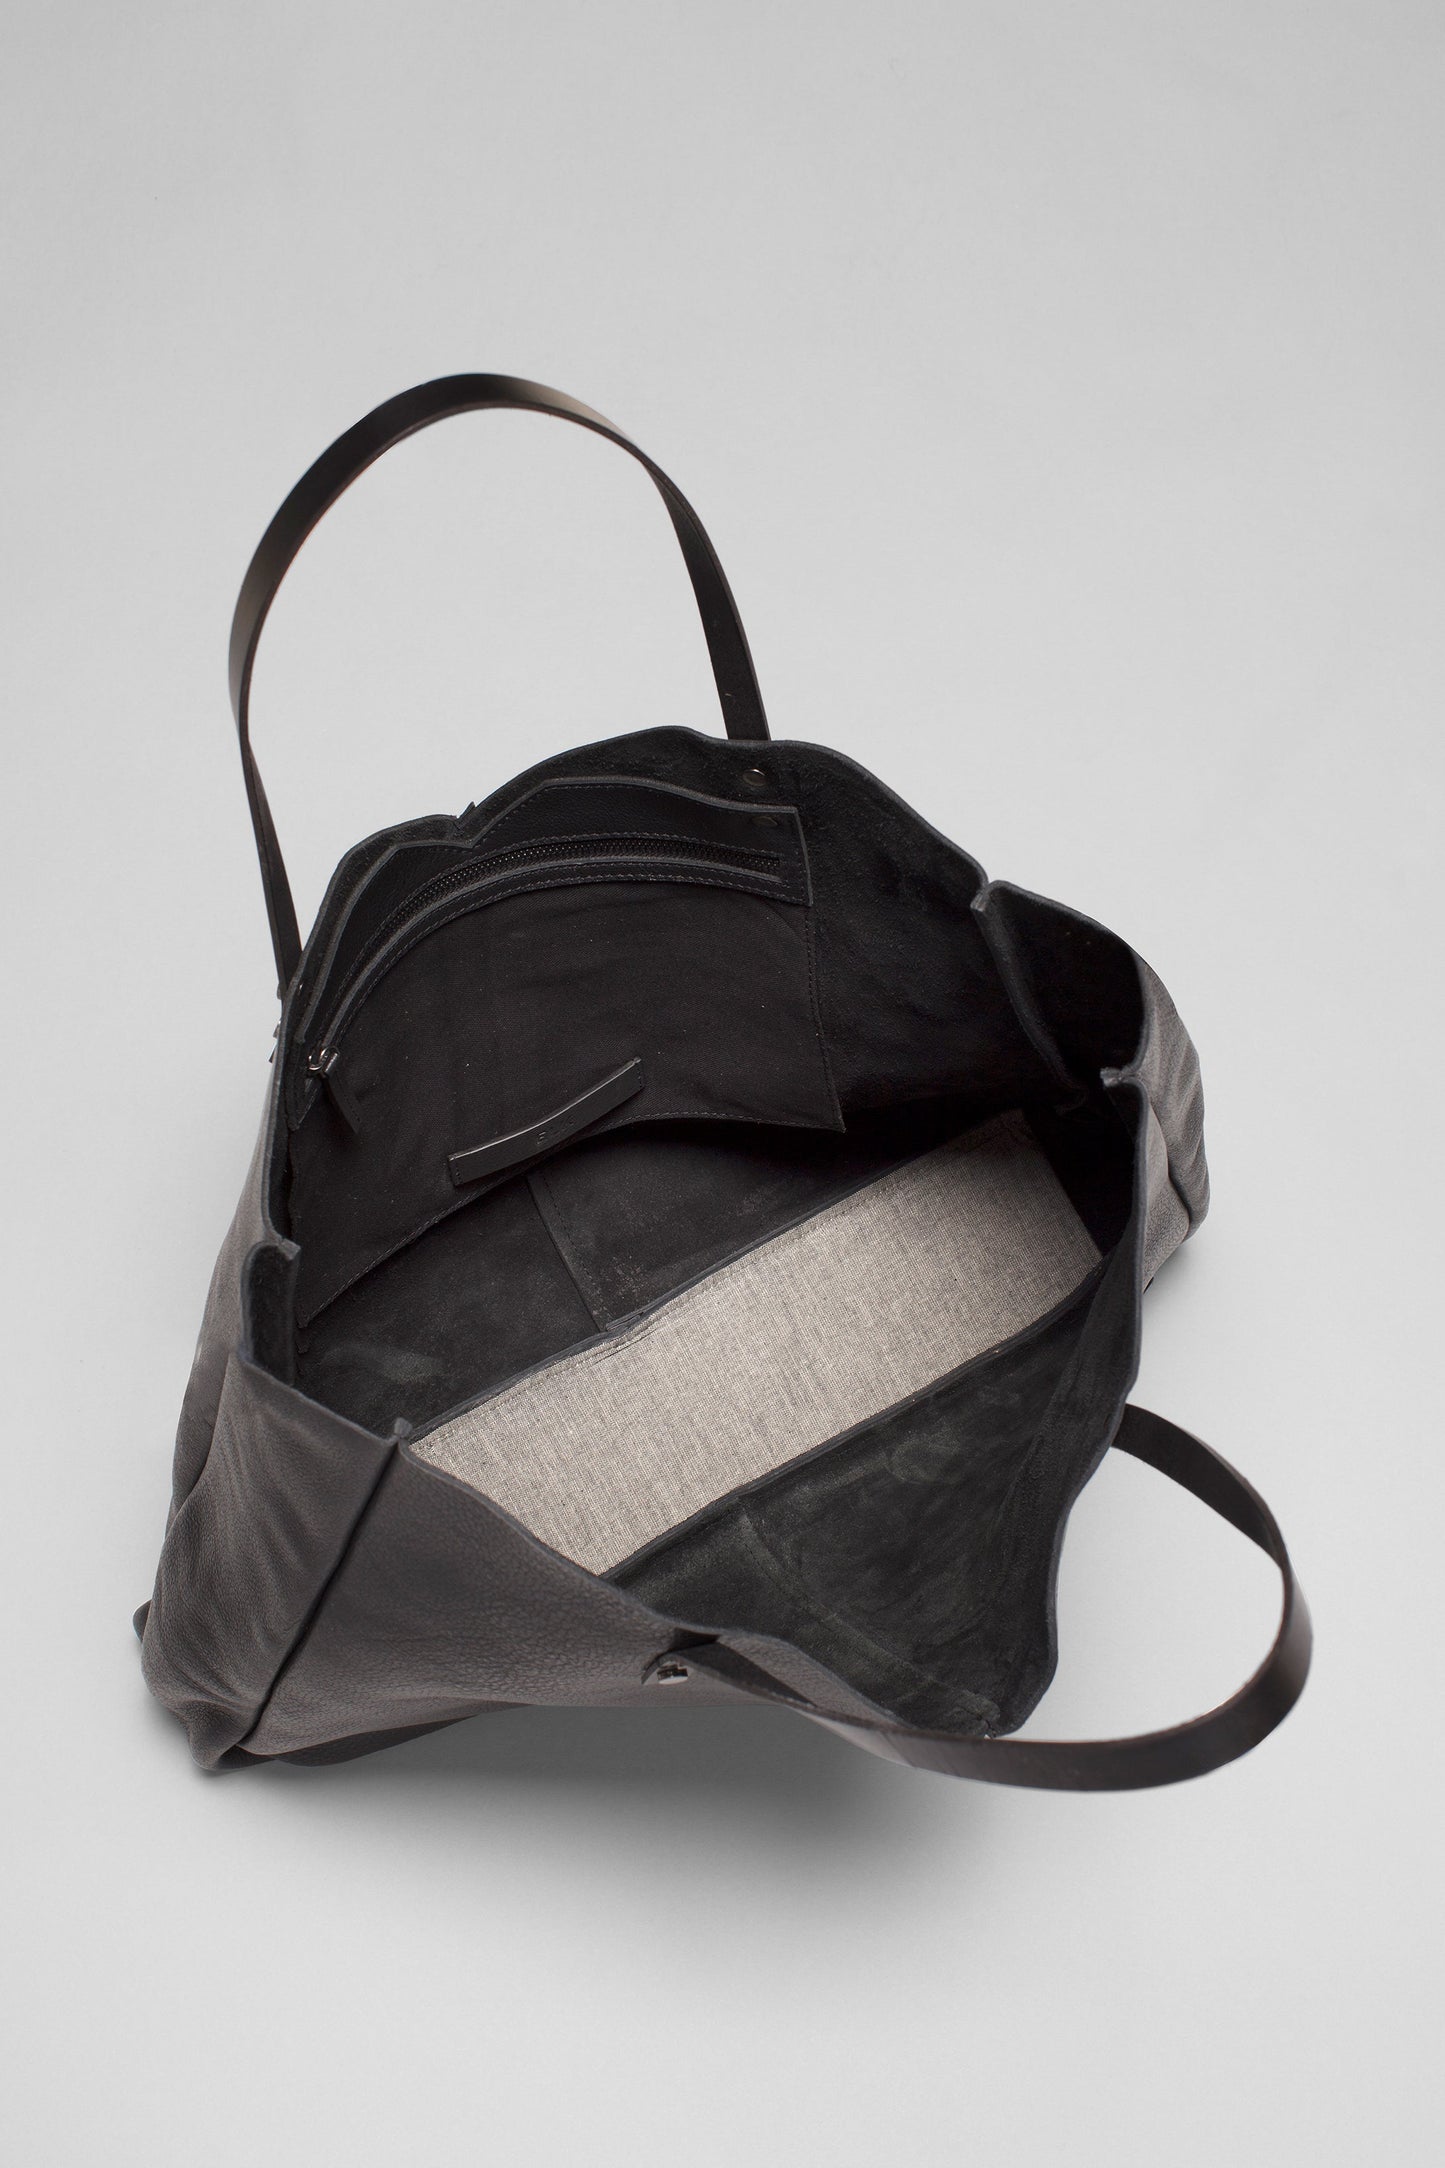 Vee Remnant Leather Large Tote Shopper Bag Internal BLACK